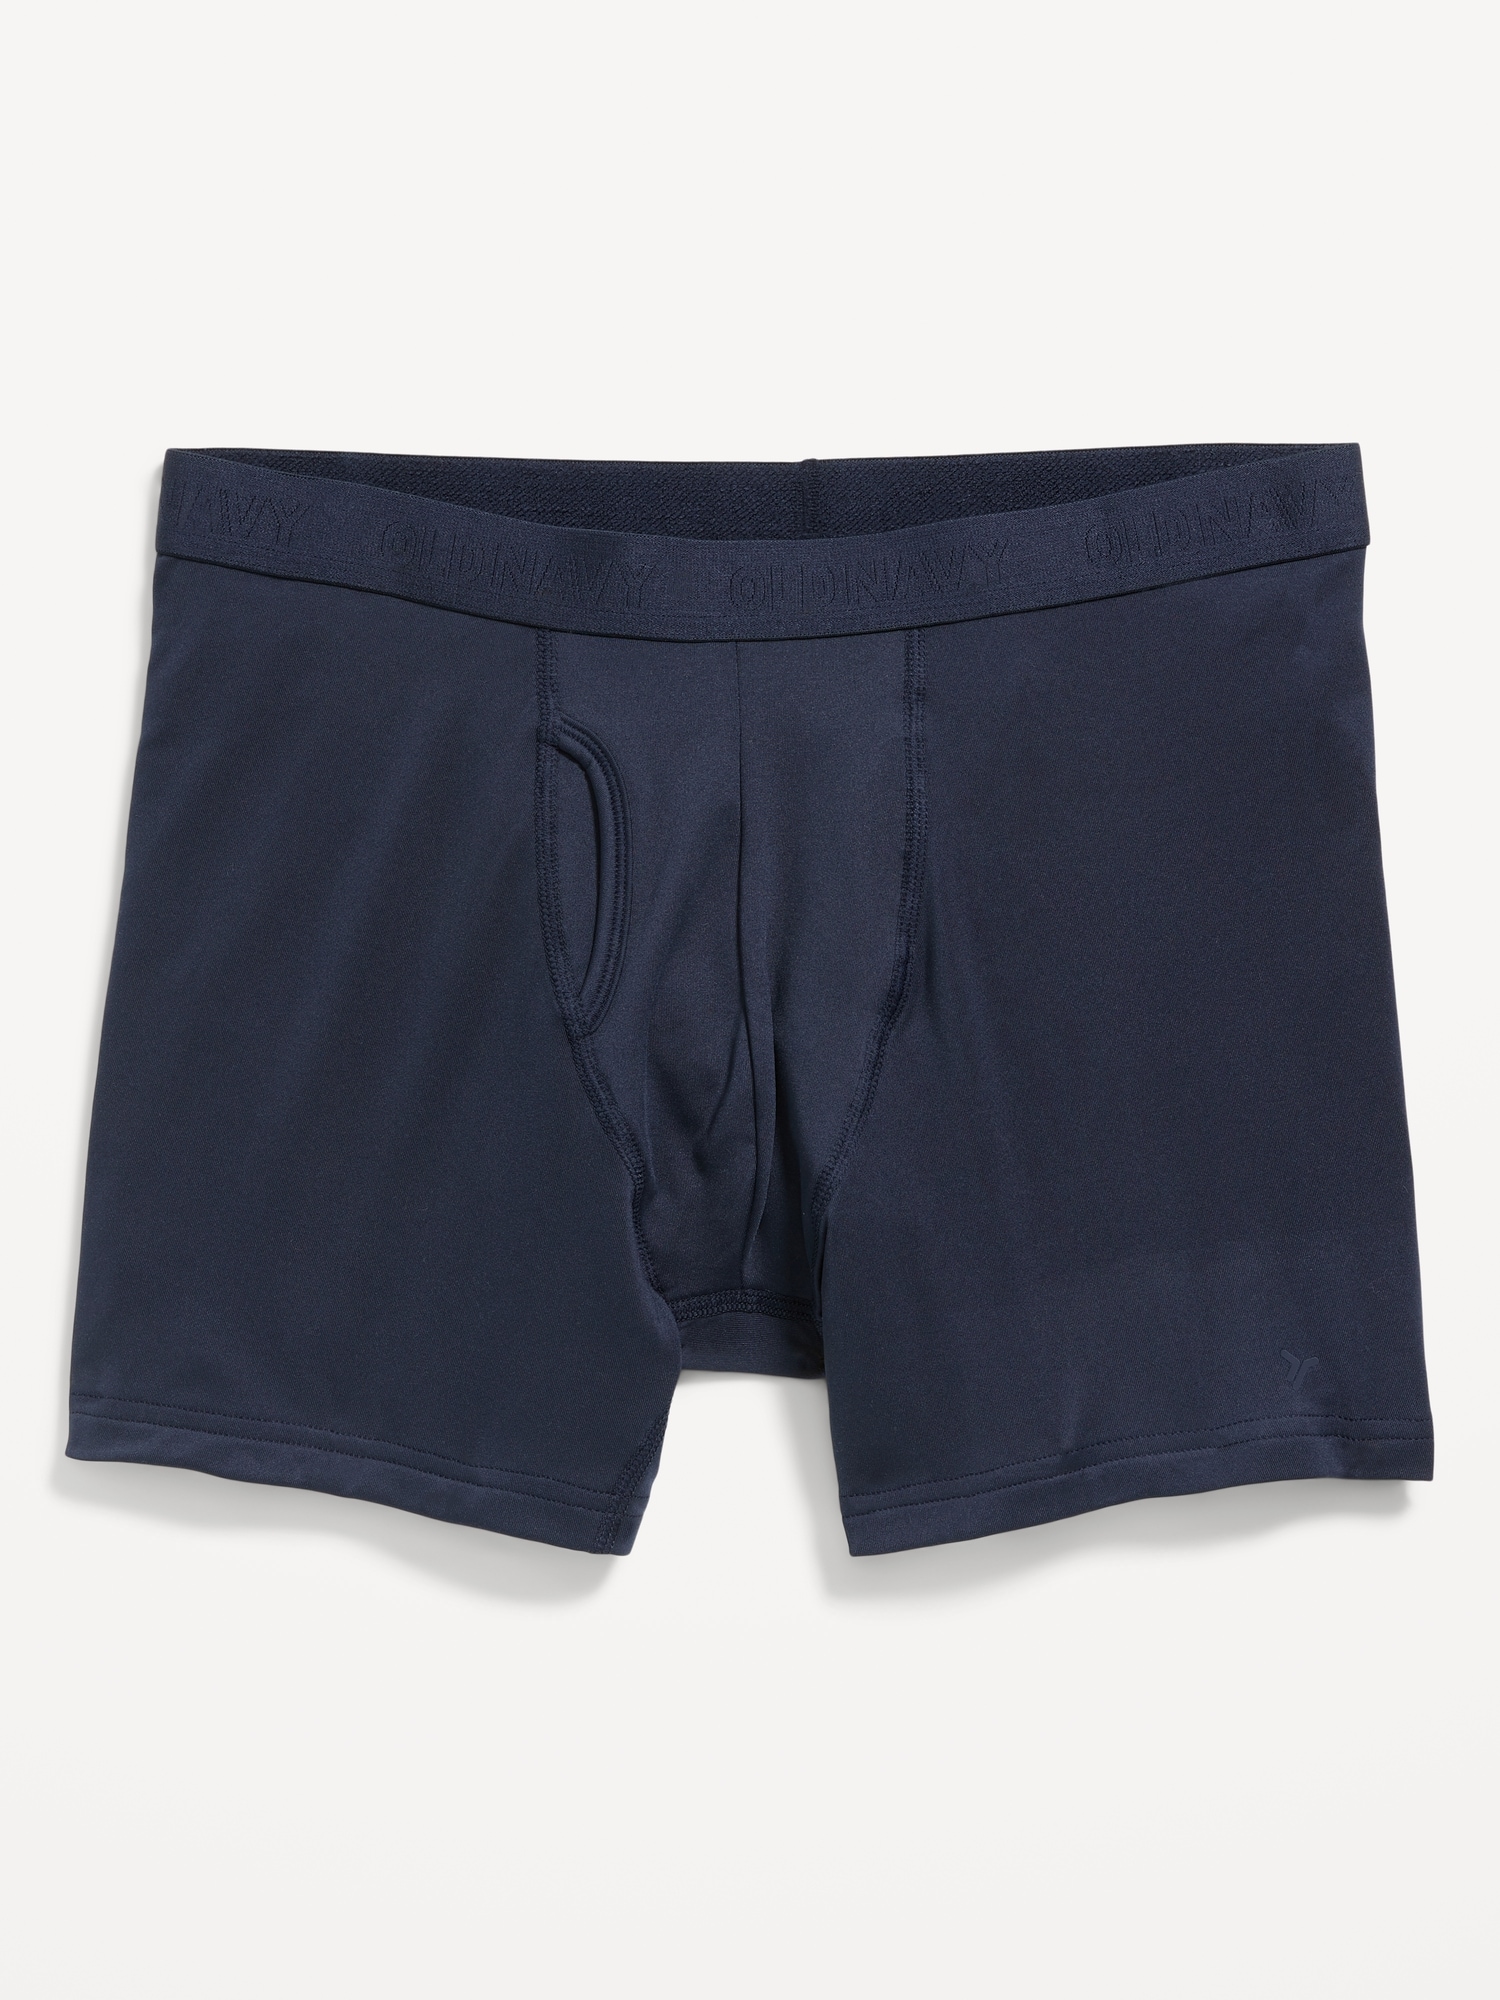 Old Navy Go-Dry Cool Performance Boxer-Brief Underwear -- 5-inch inseam blue. 1